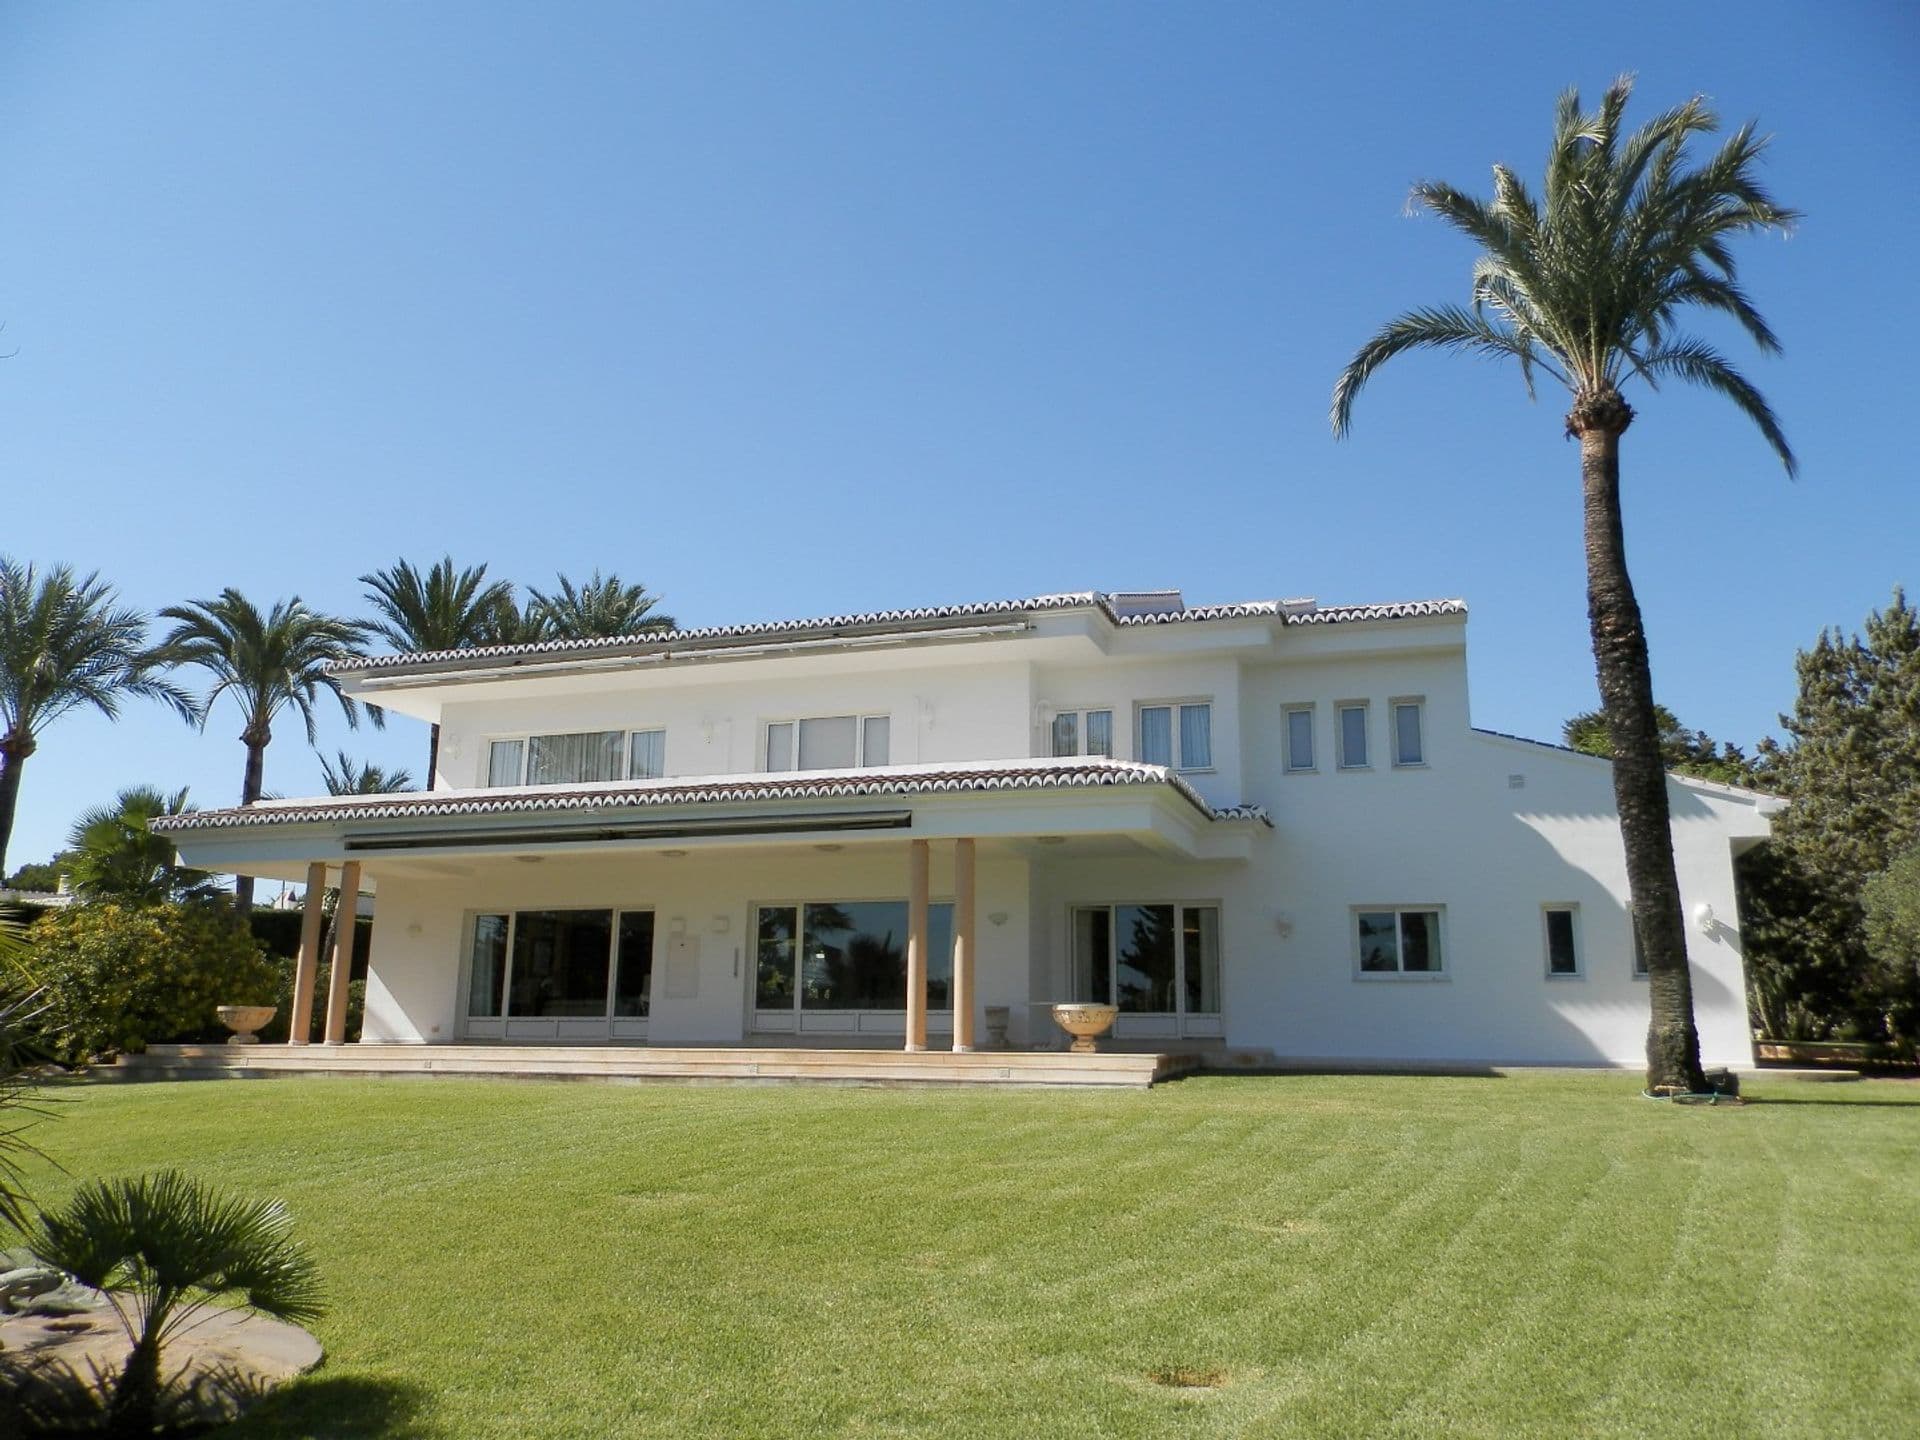 Exclusive villa with an exquisite interior design in the Cap Martí area, Jávea.